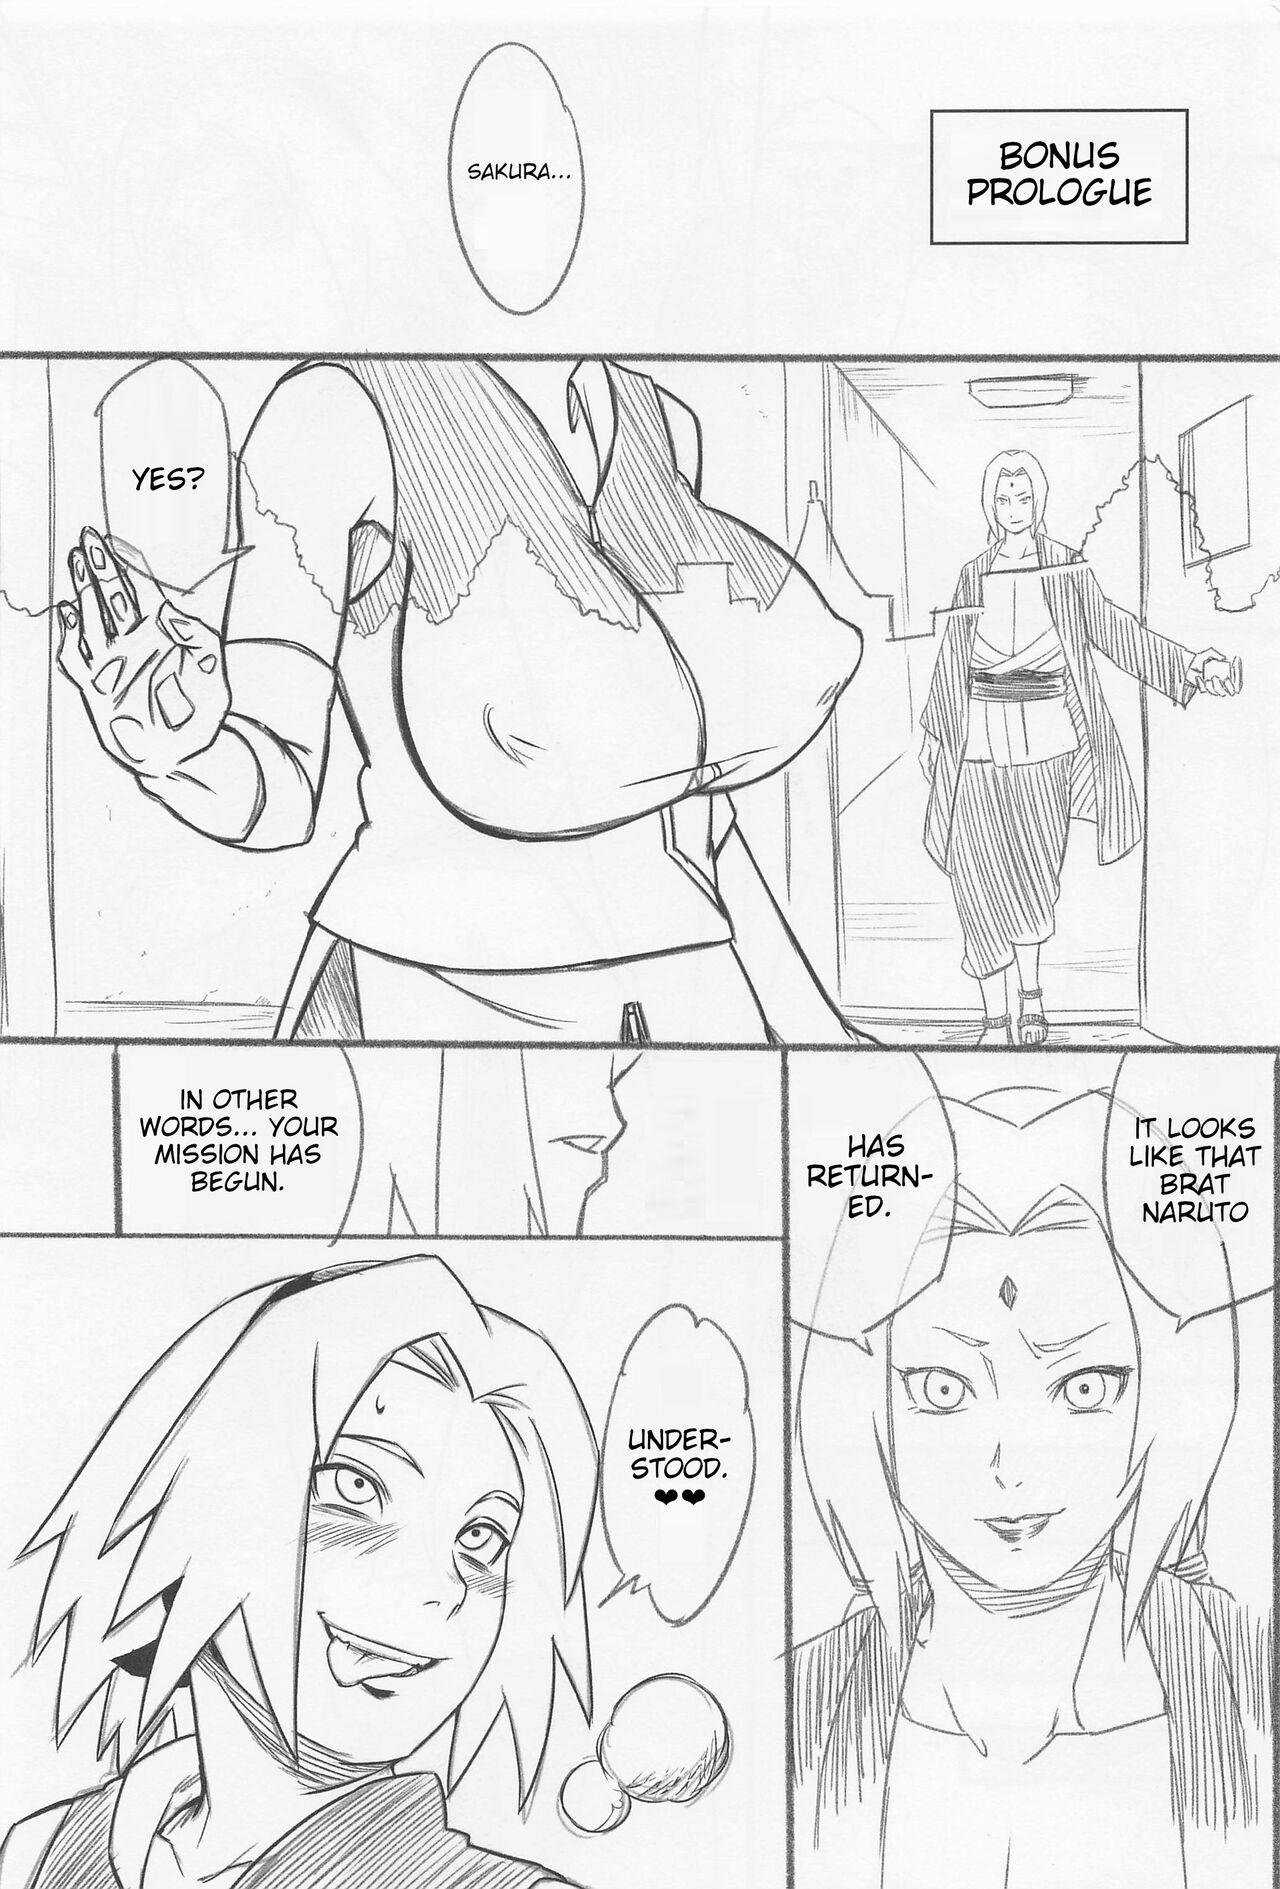 Pool Hyakugo no Jutsu - Naruto Tiny Tits - Page 2